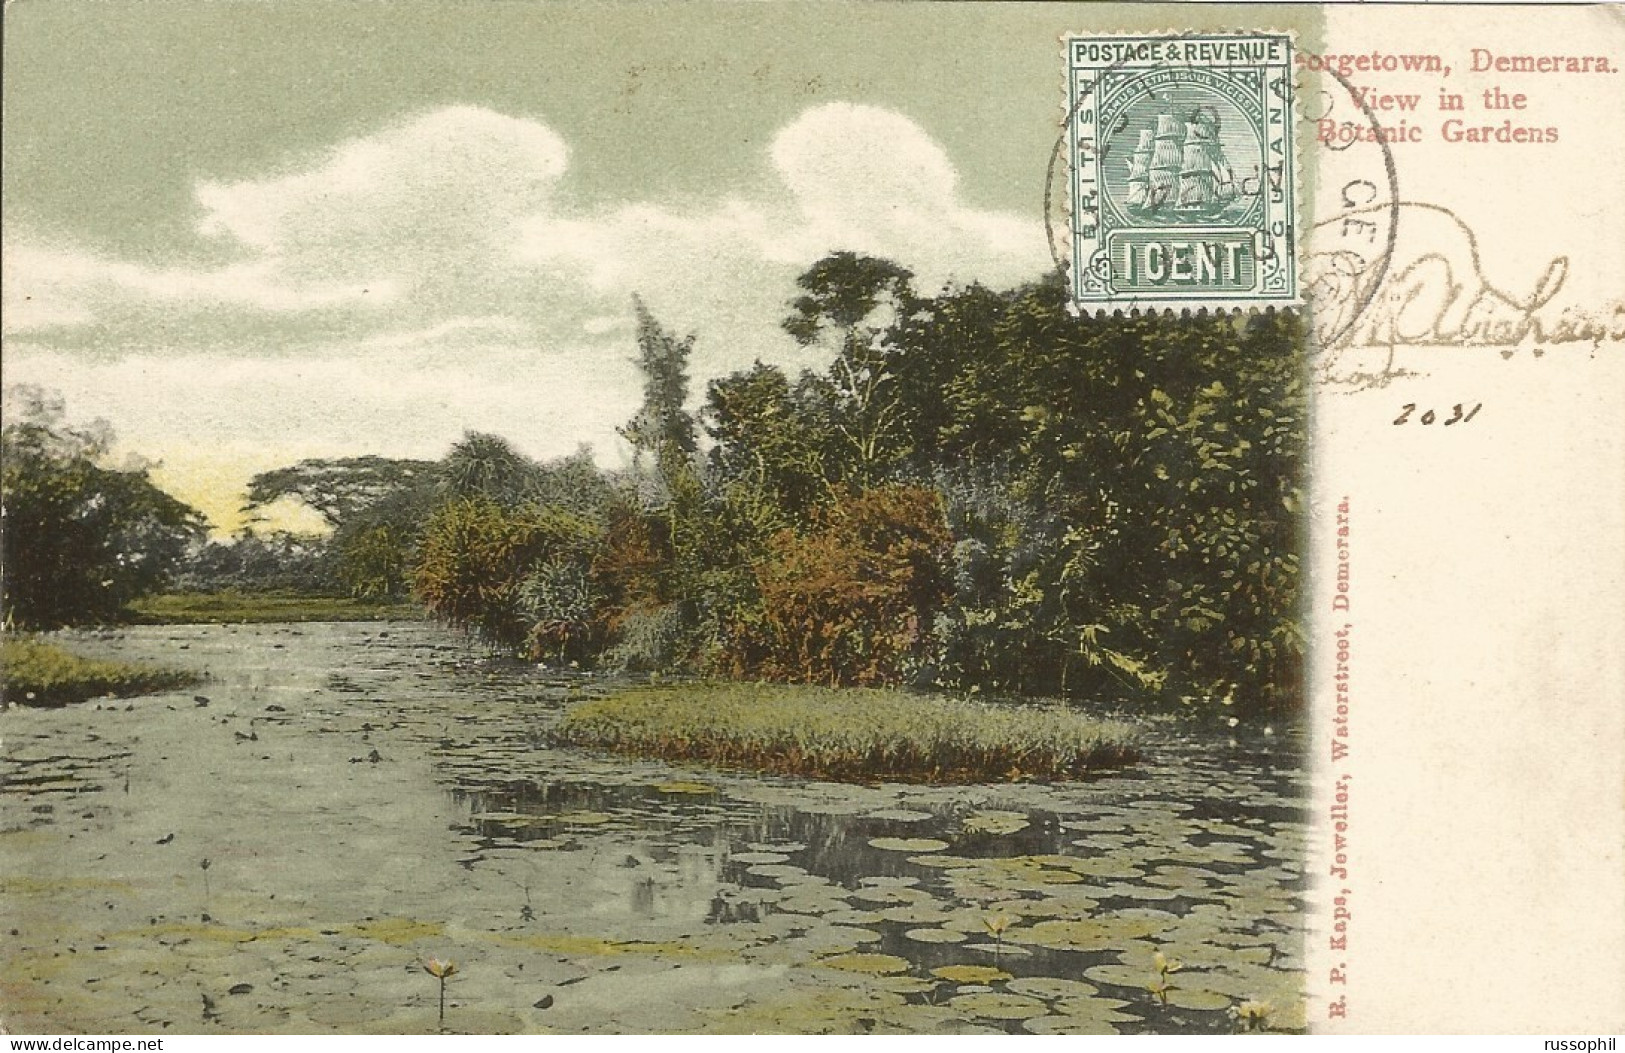 GUYANA - BRITISH GUYANA - GEORGETOWN, DEMERARA. VIEW IN THE BOTANIC GARDENS - ED. KAPS - 1906 - Guyana (ehemals Britisch-Guayana)